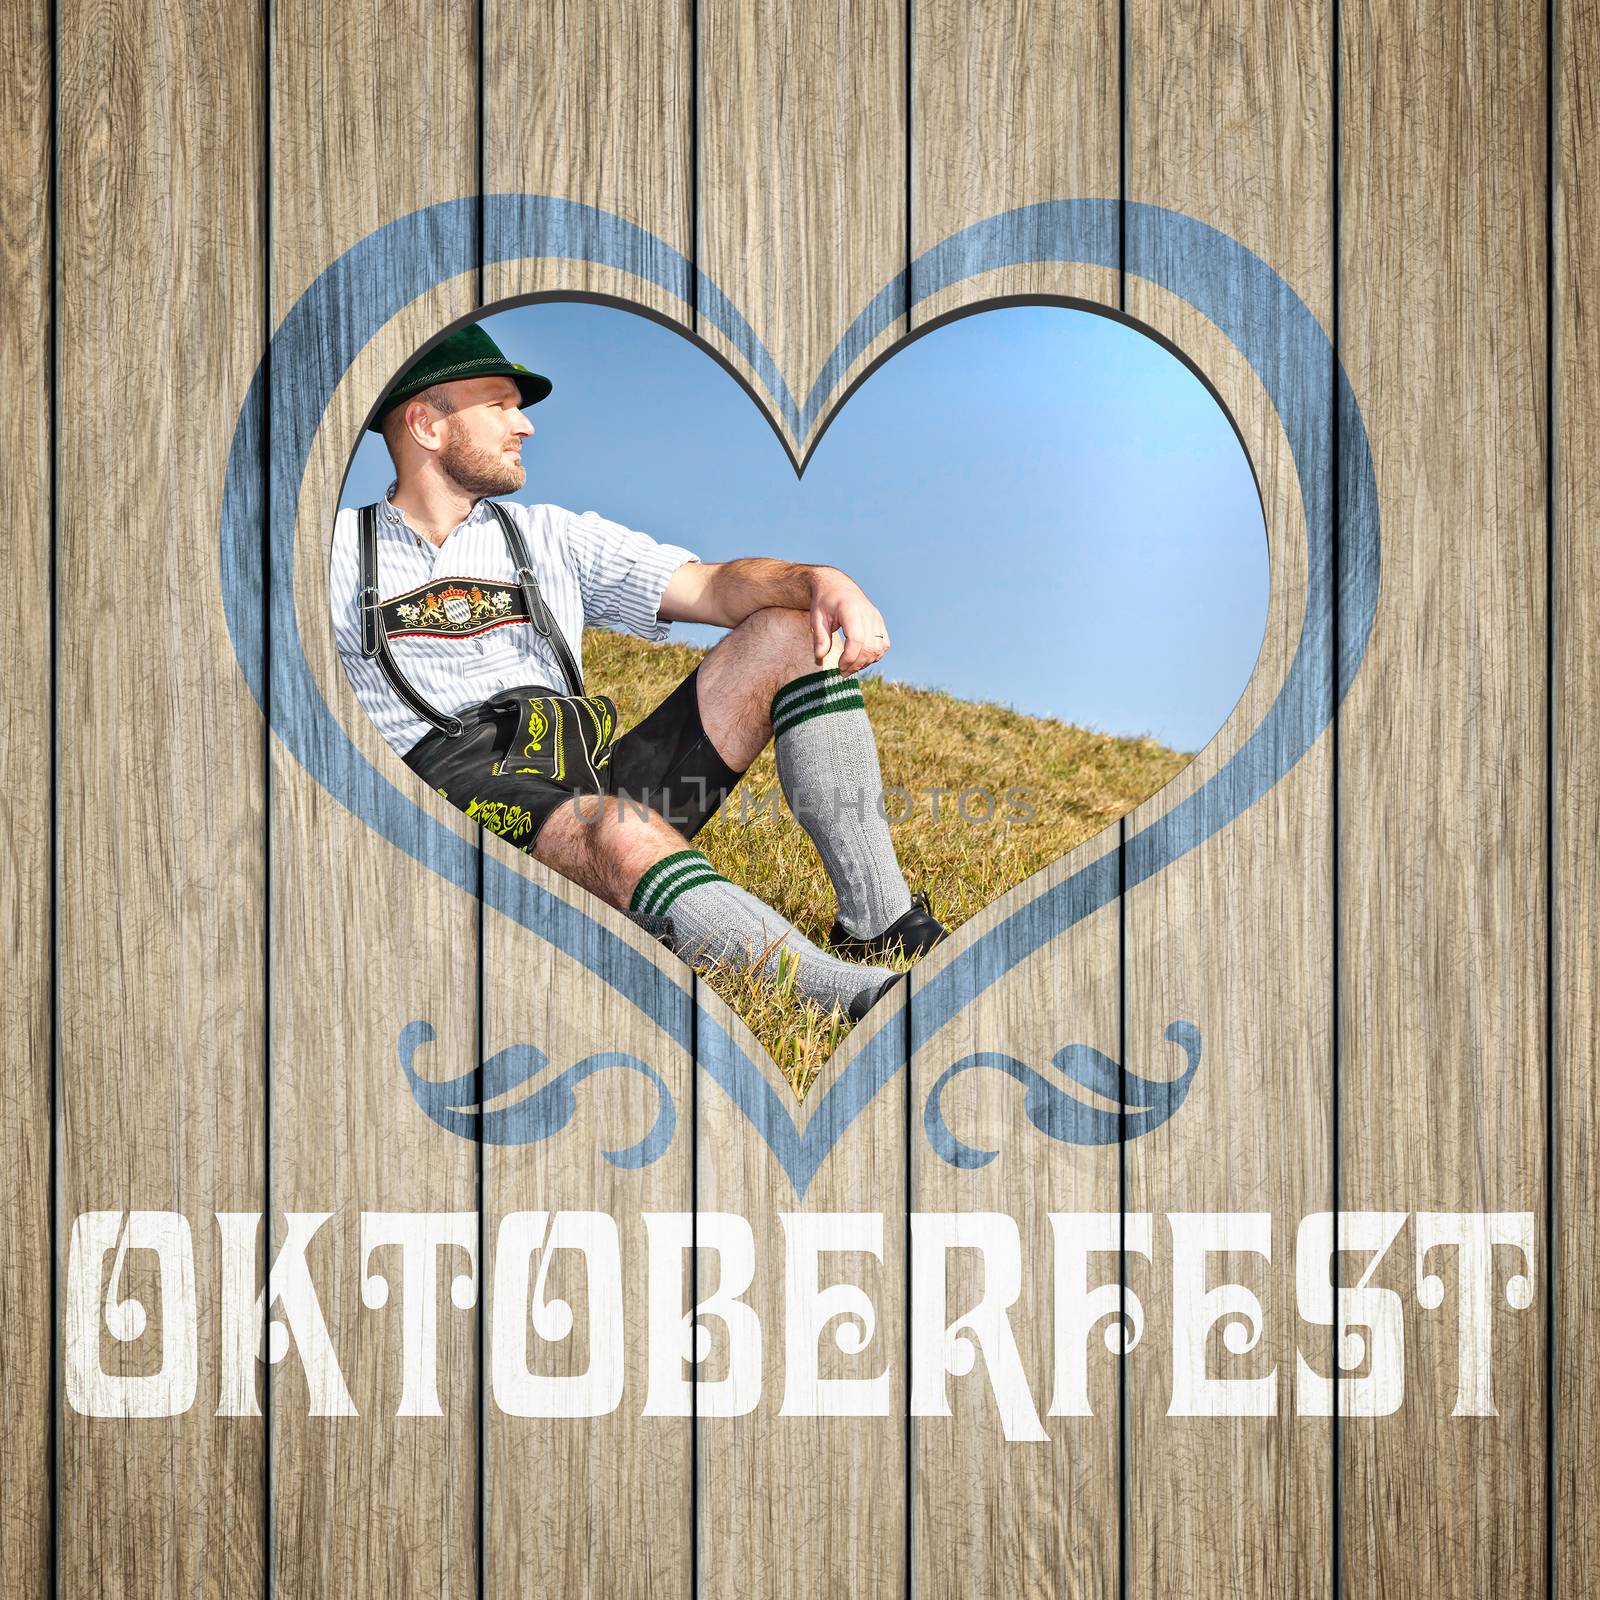 An image of a beautiful wooden heart Oktoberfest